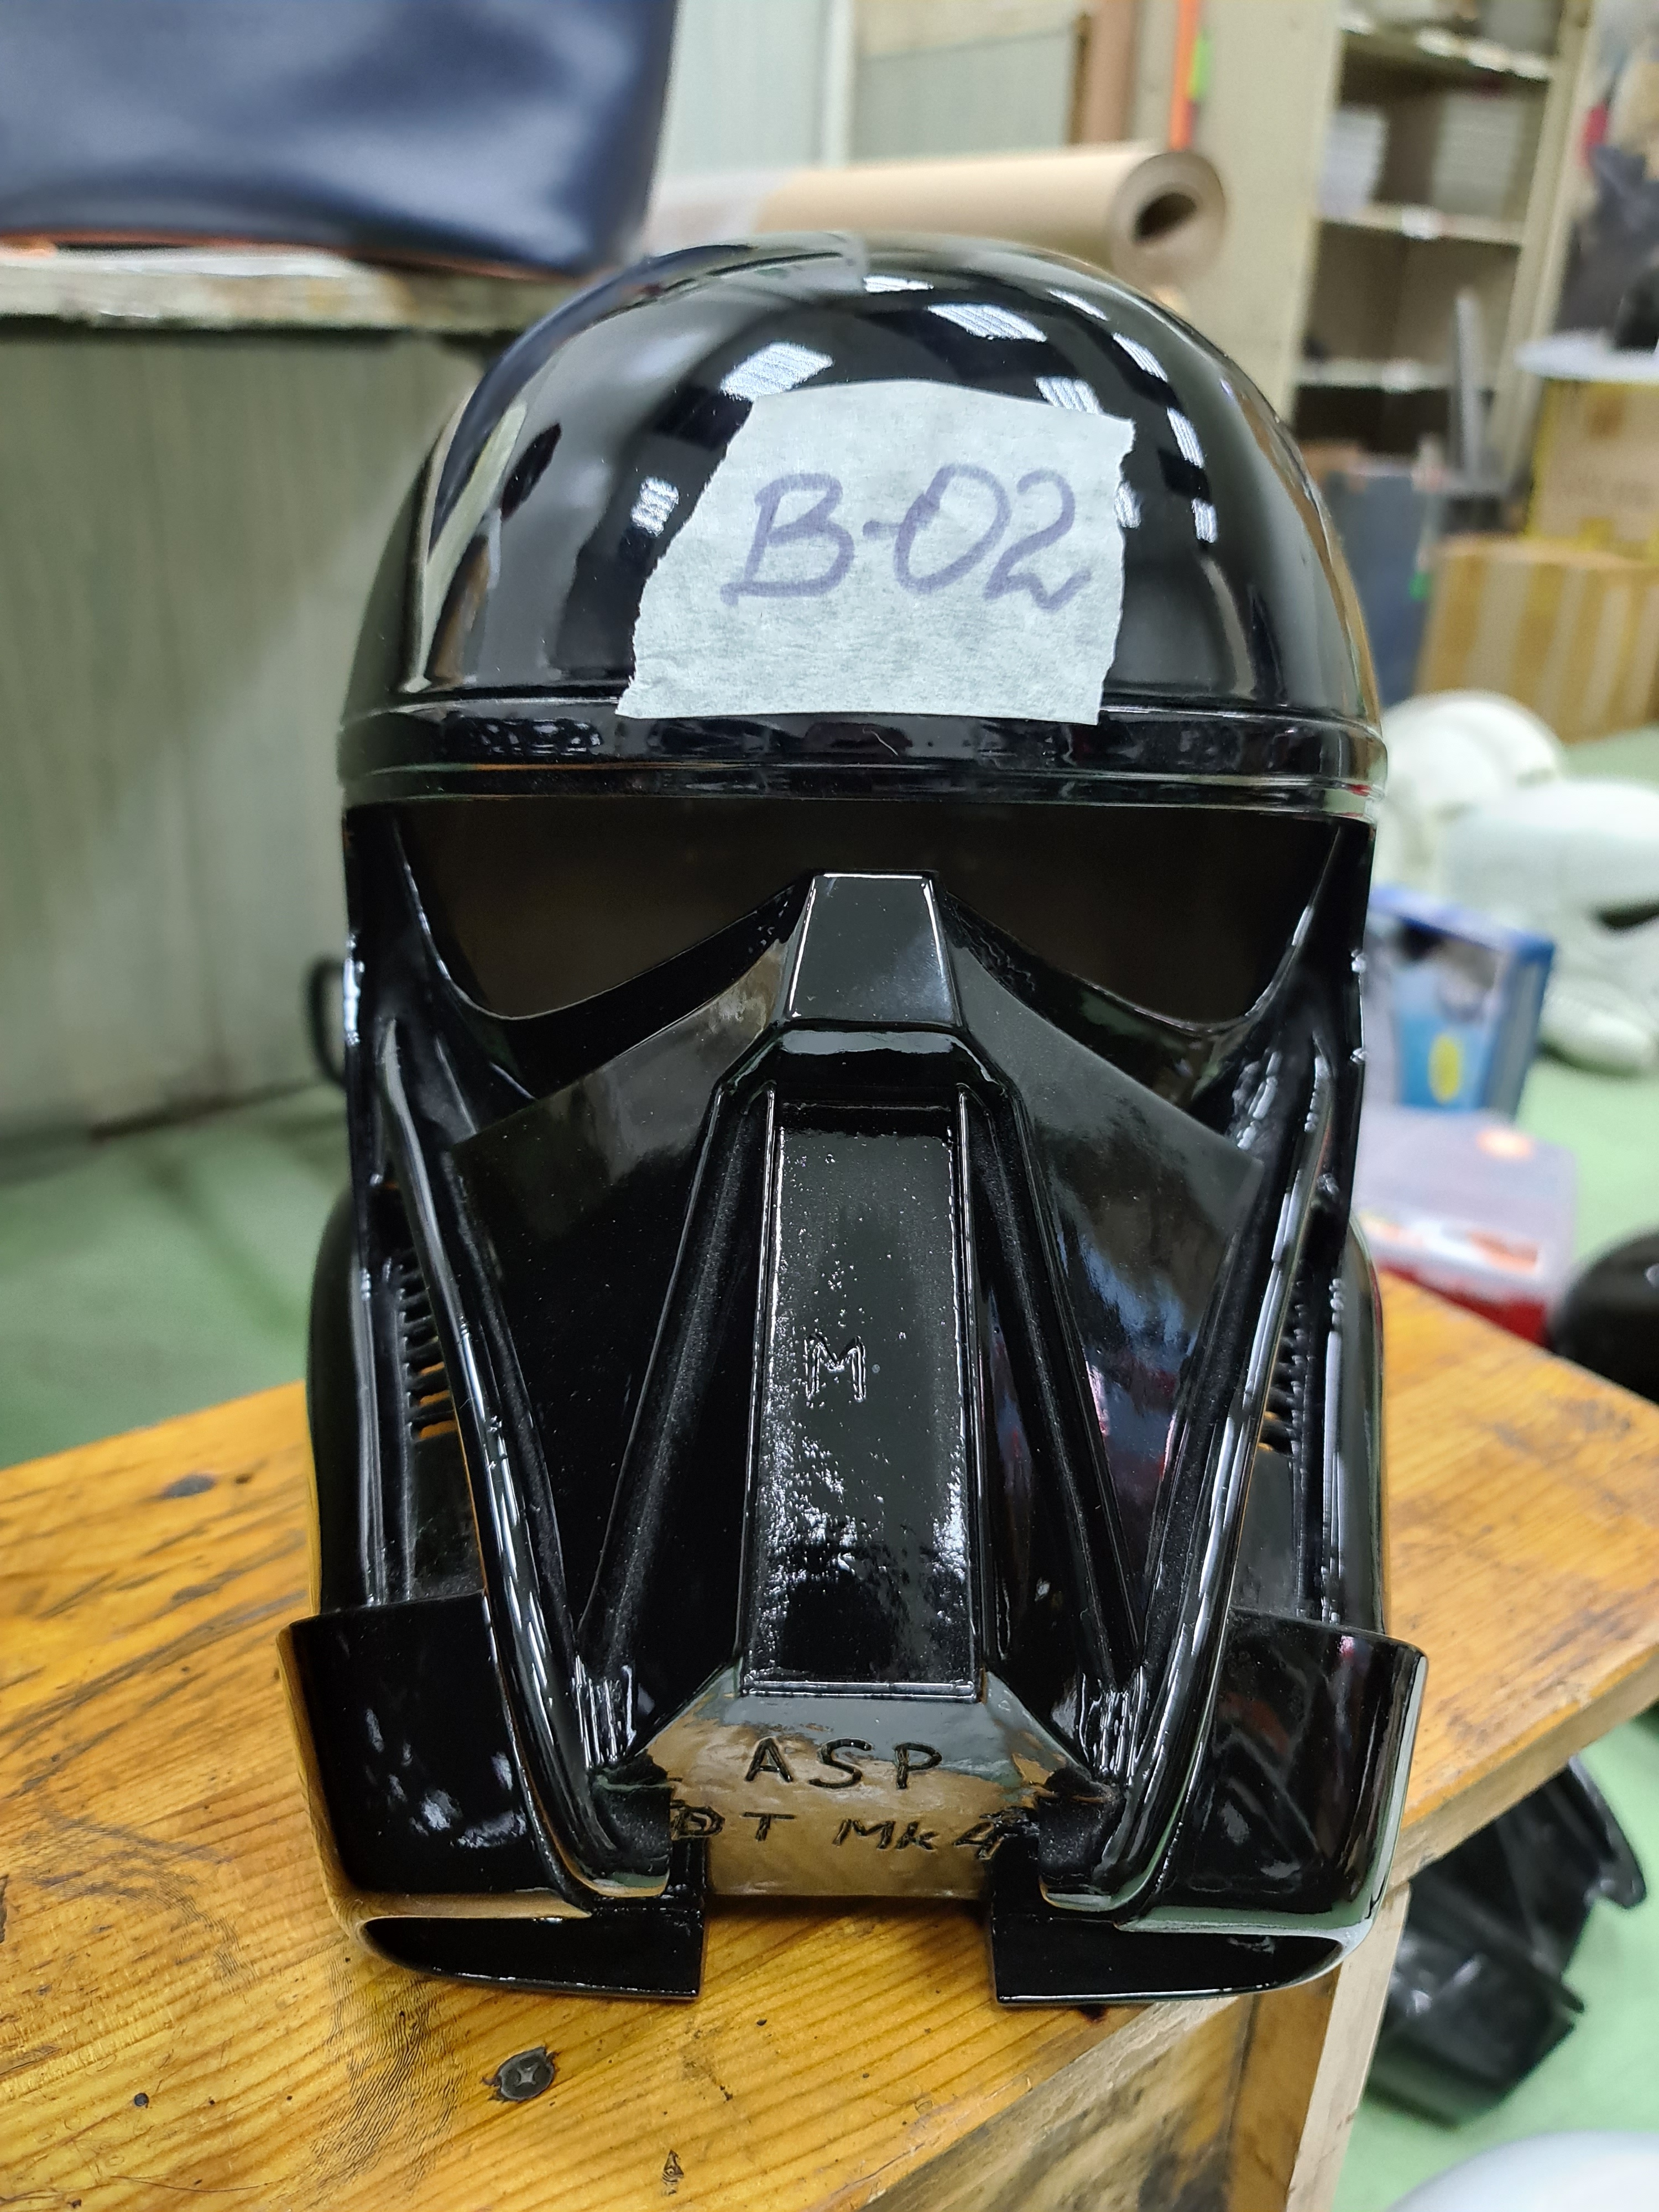 Grade "B" helmet - DeathTrooper #2